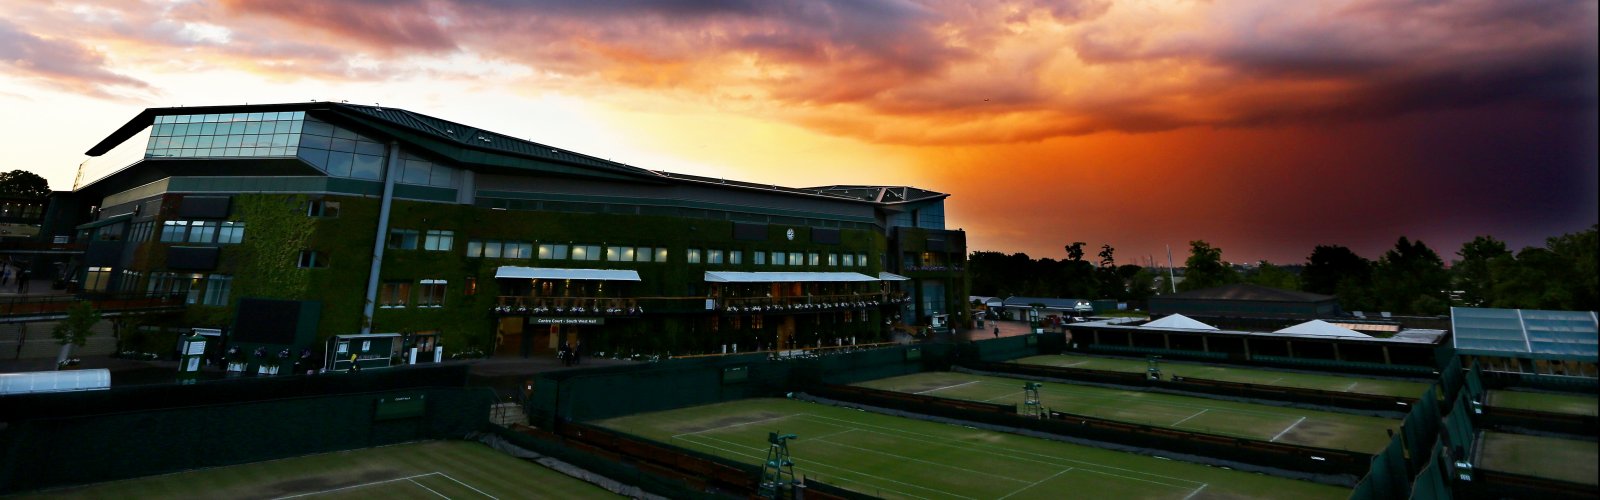 Wimbledon Tennis Centre Court night time